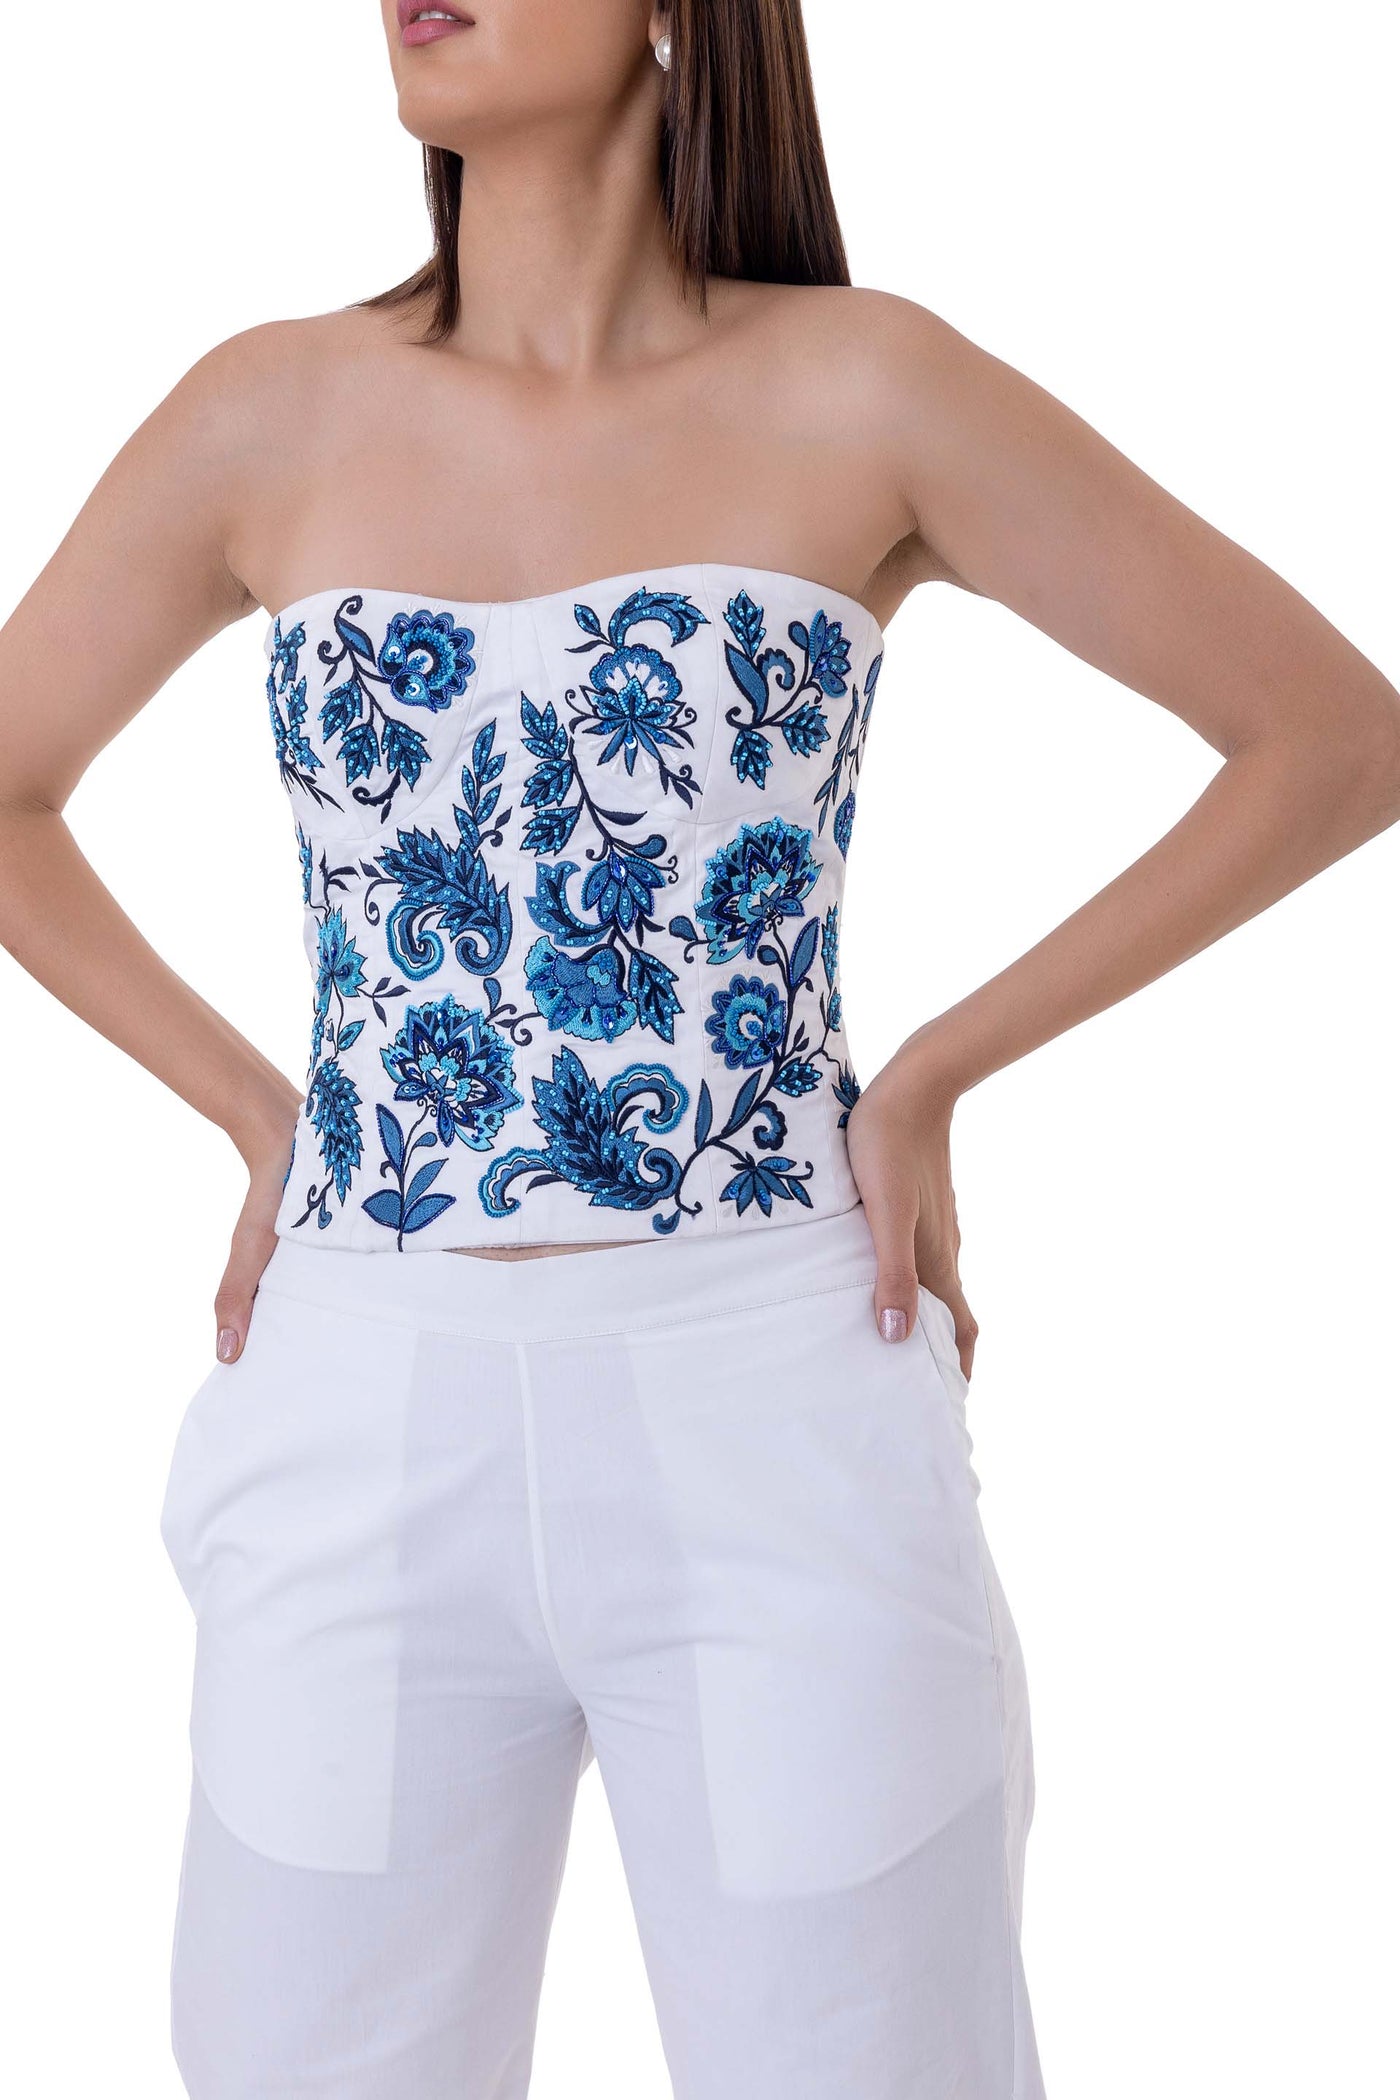 gaya Hiya Bustier white blue western indian designer wear online shopping melange singapore